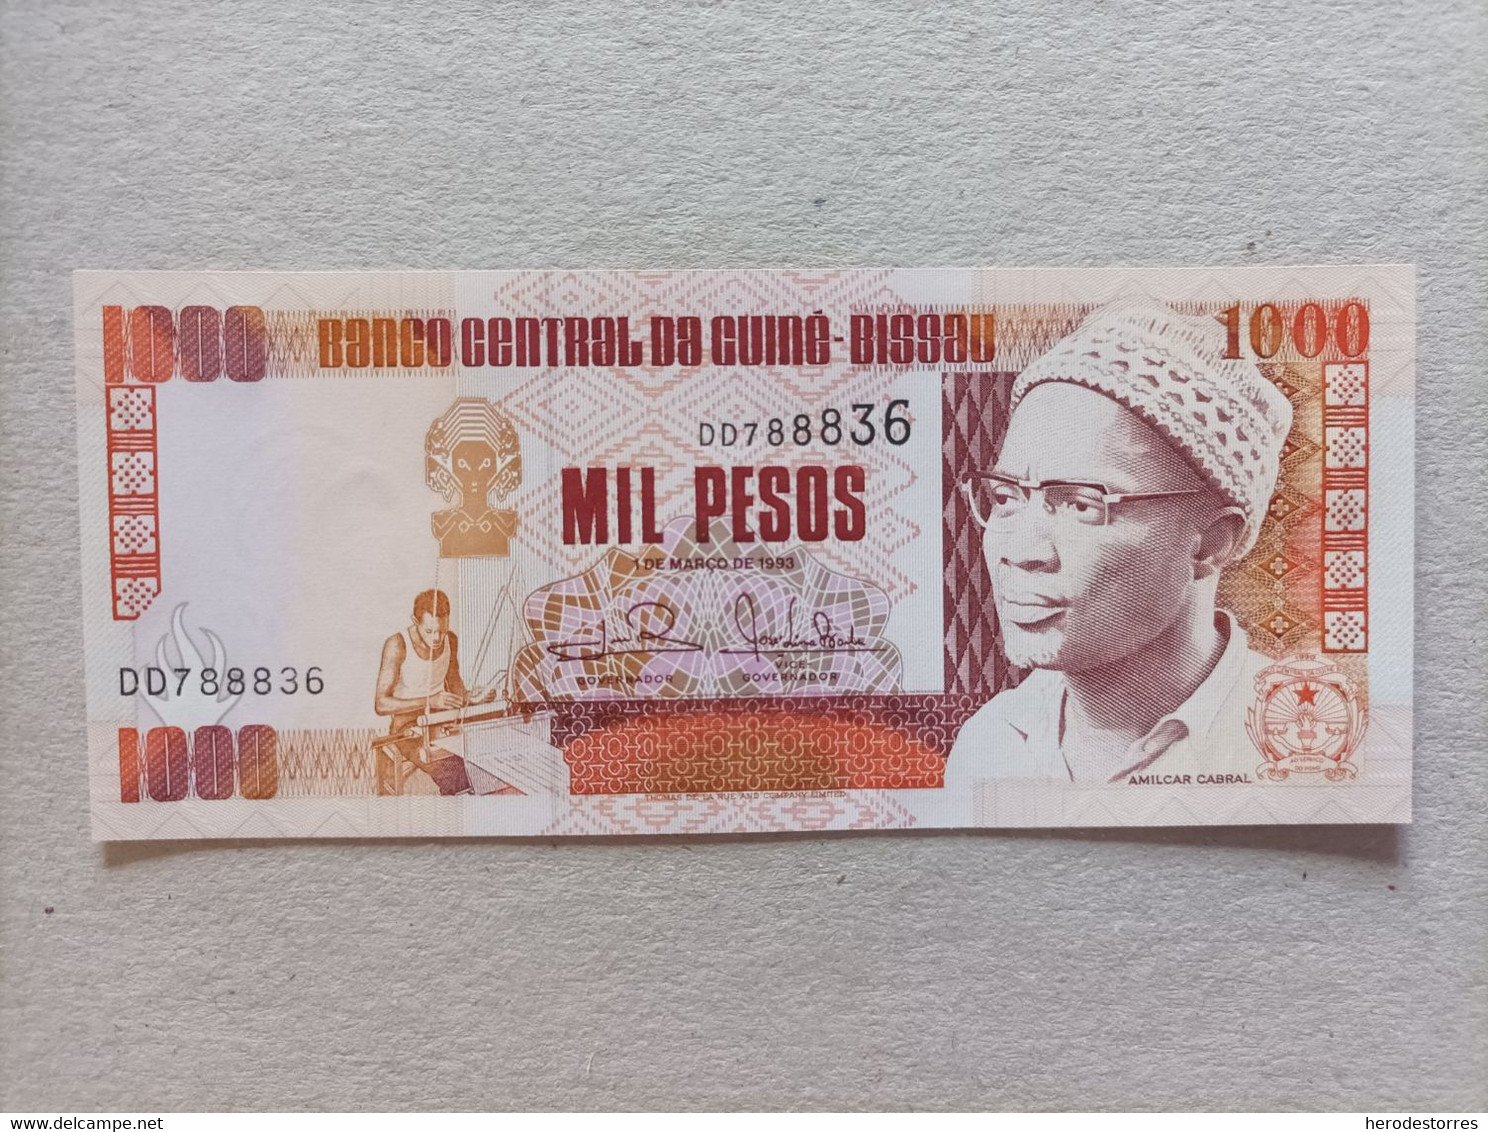 Billete De Guinea Bissau De 1000 Pesos, Año 1993, UNC - Guinea-Bissau